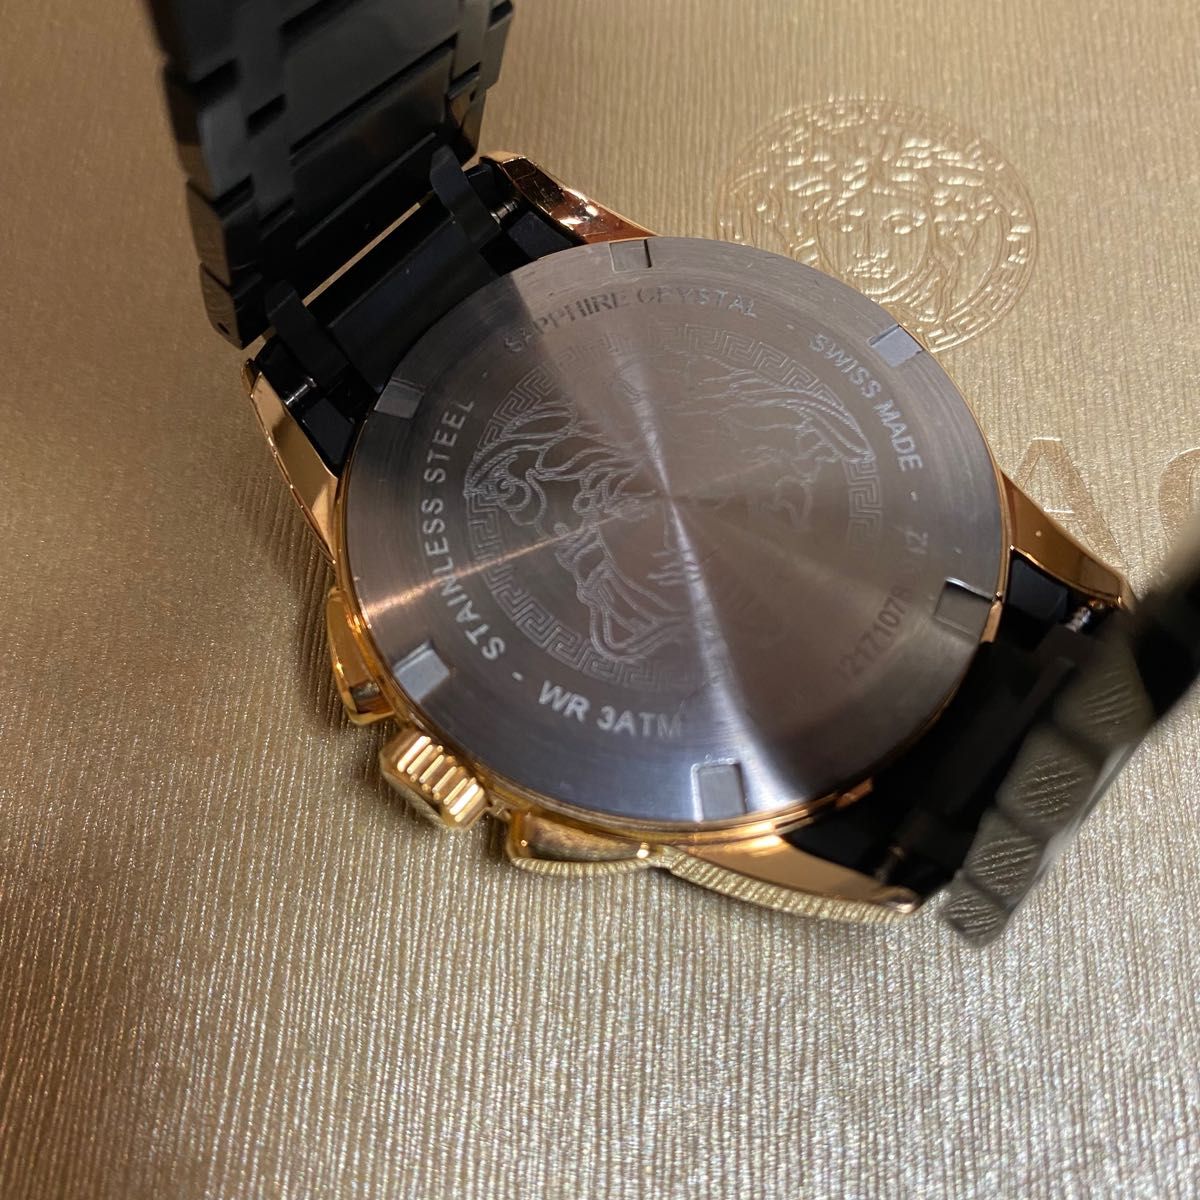 VERSACE ヴェルサーチェ CHARACTERCHRONO 腕時計 美品 クロノグラフ メンズ腕時計